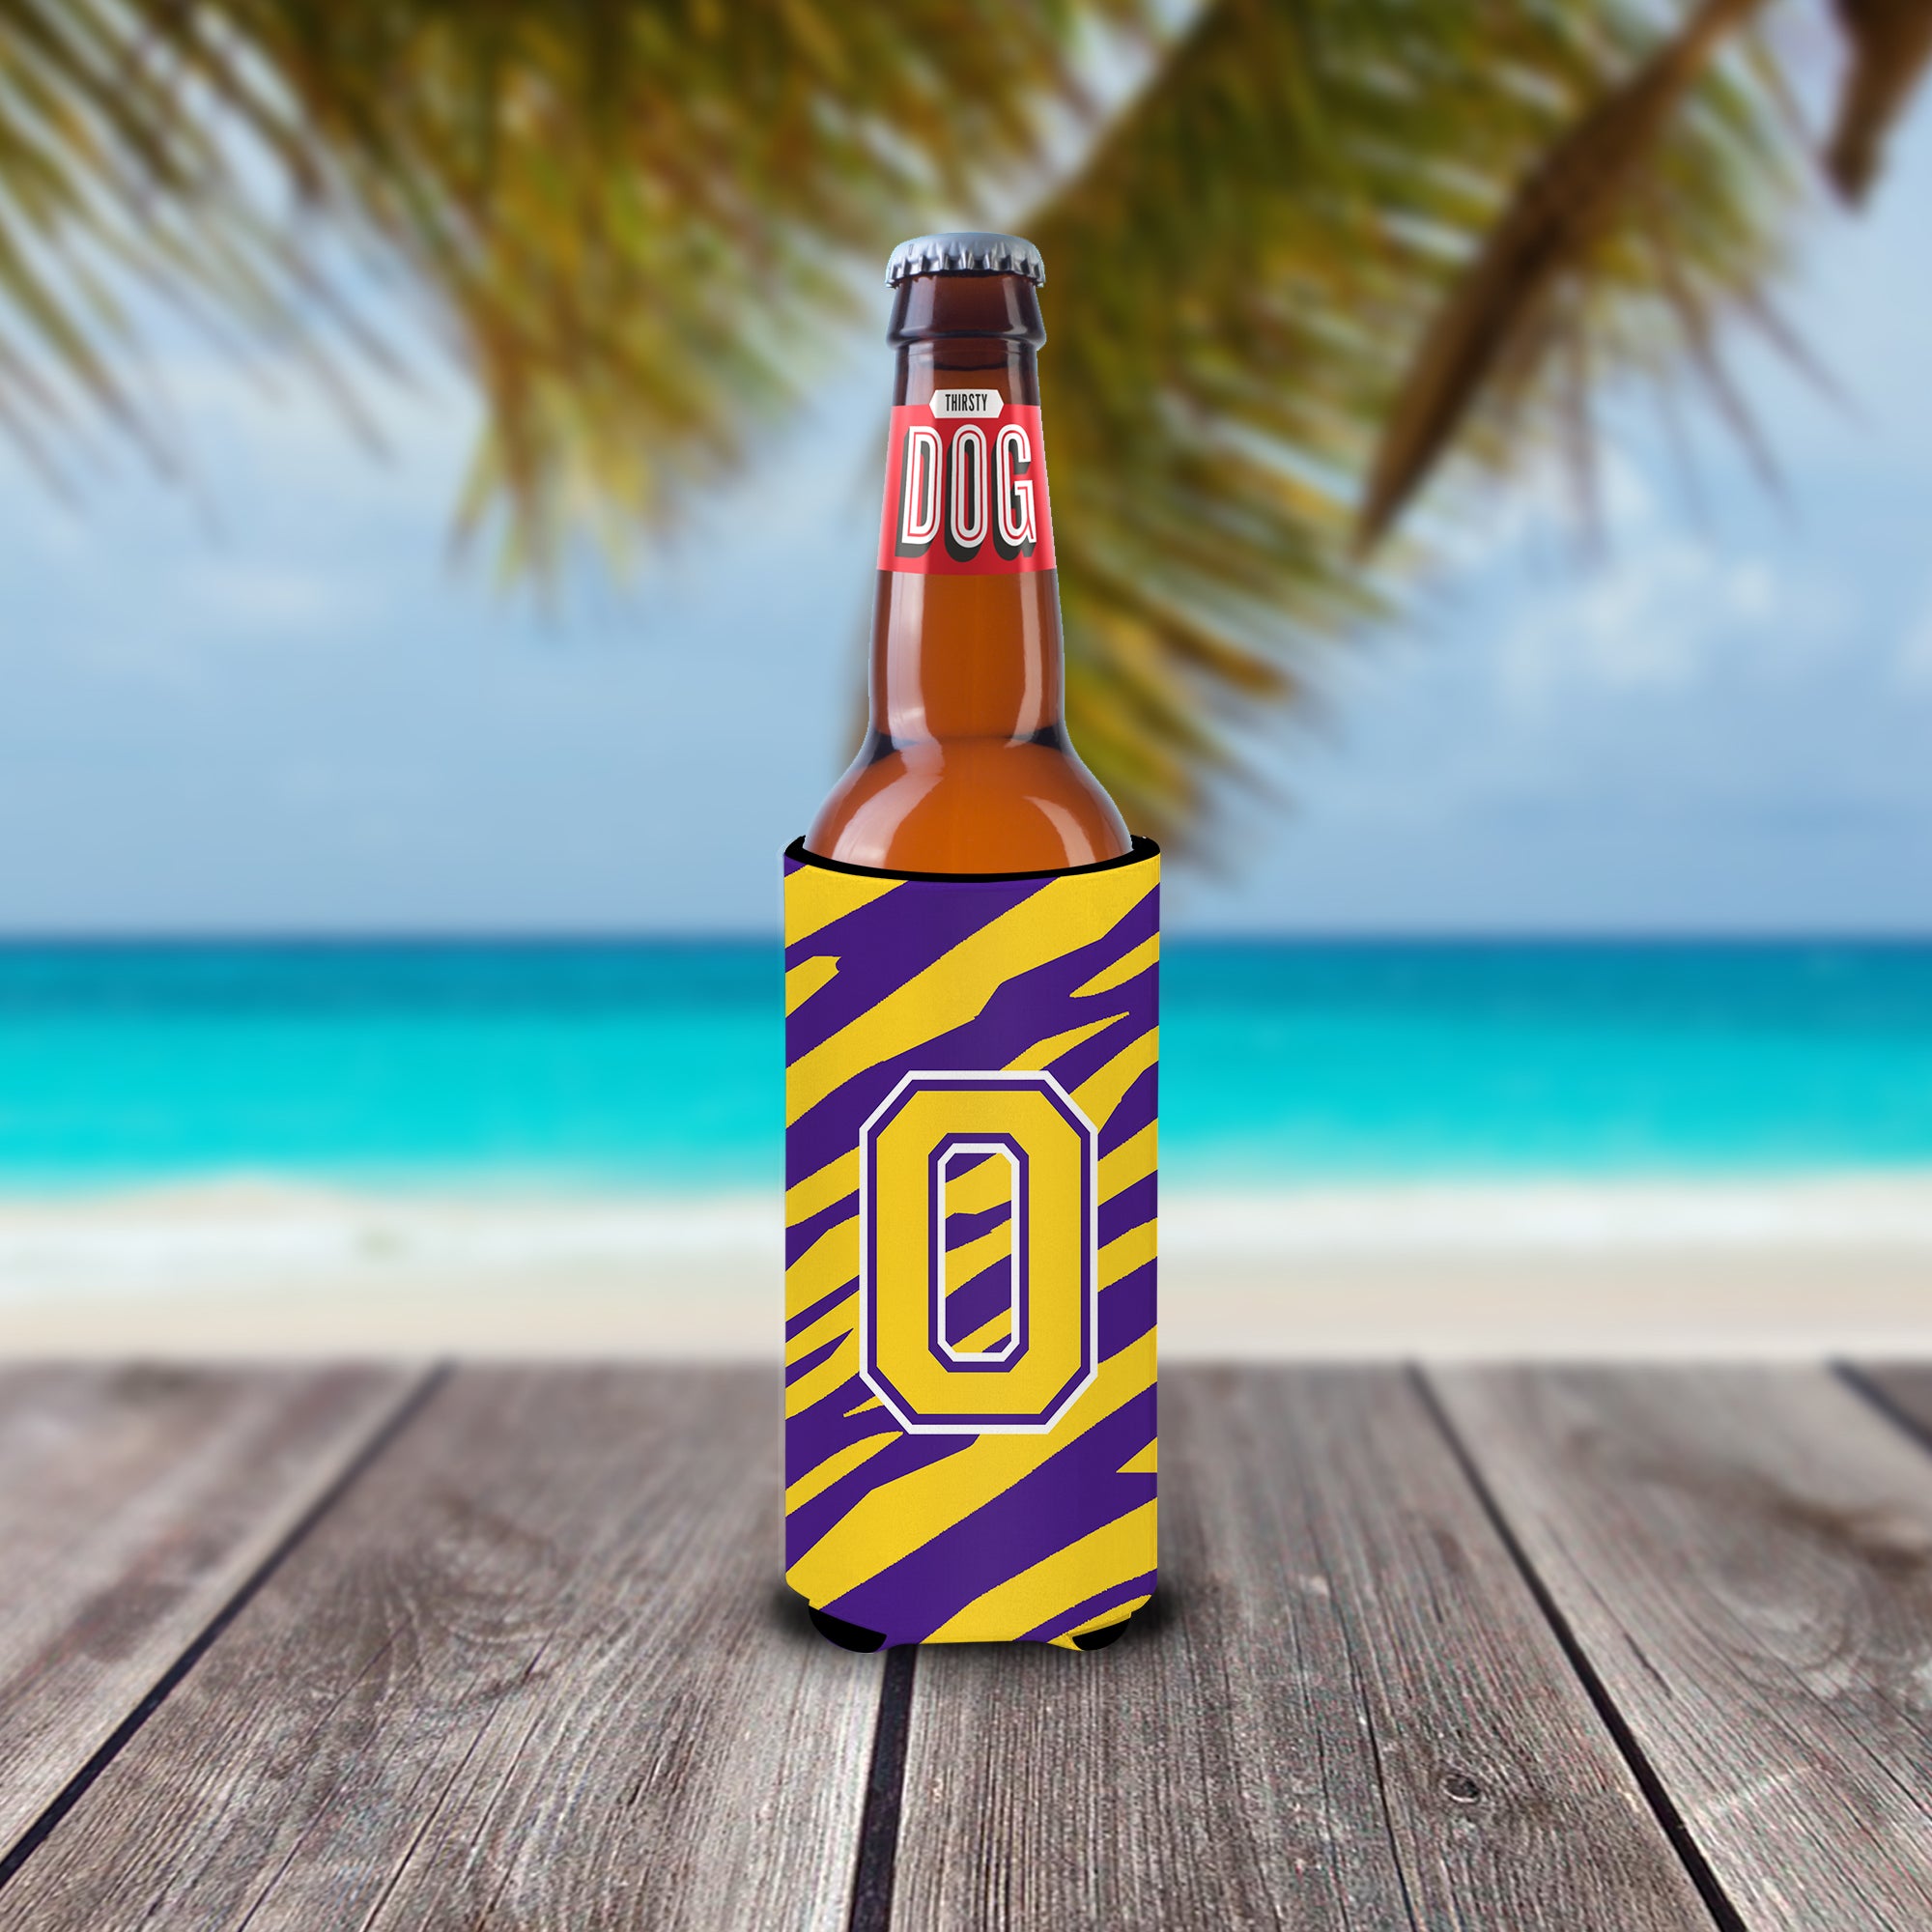 Monogram - Tiger Stripe - Purple Gold  Letter O Ultra Beverage Insulators for slim cans CJ1022-OMUK